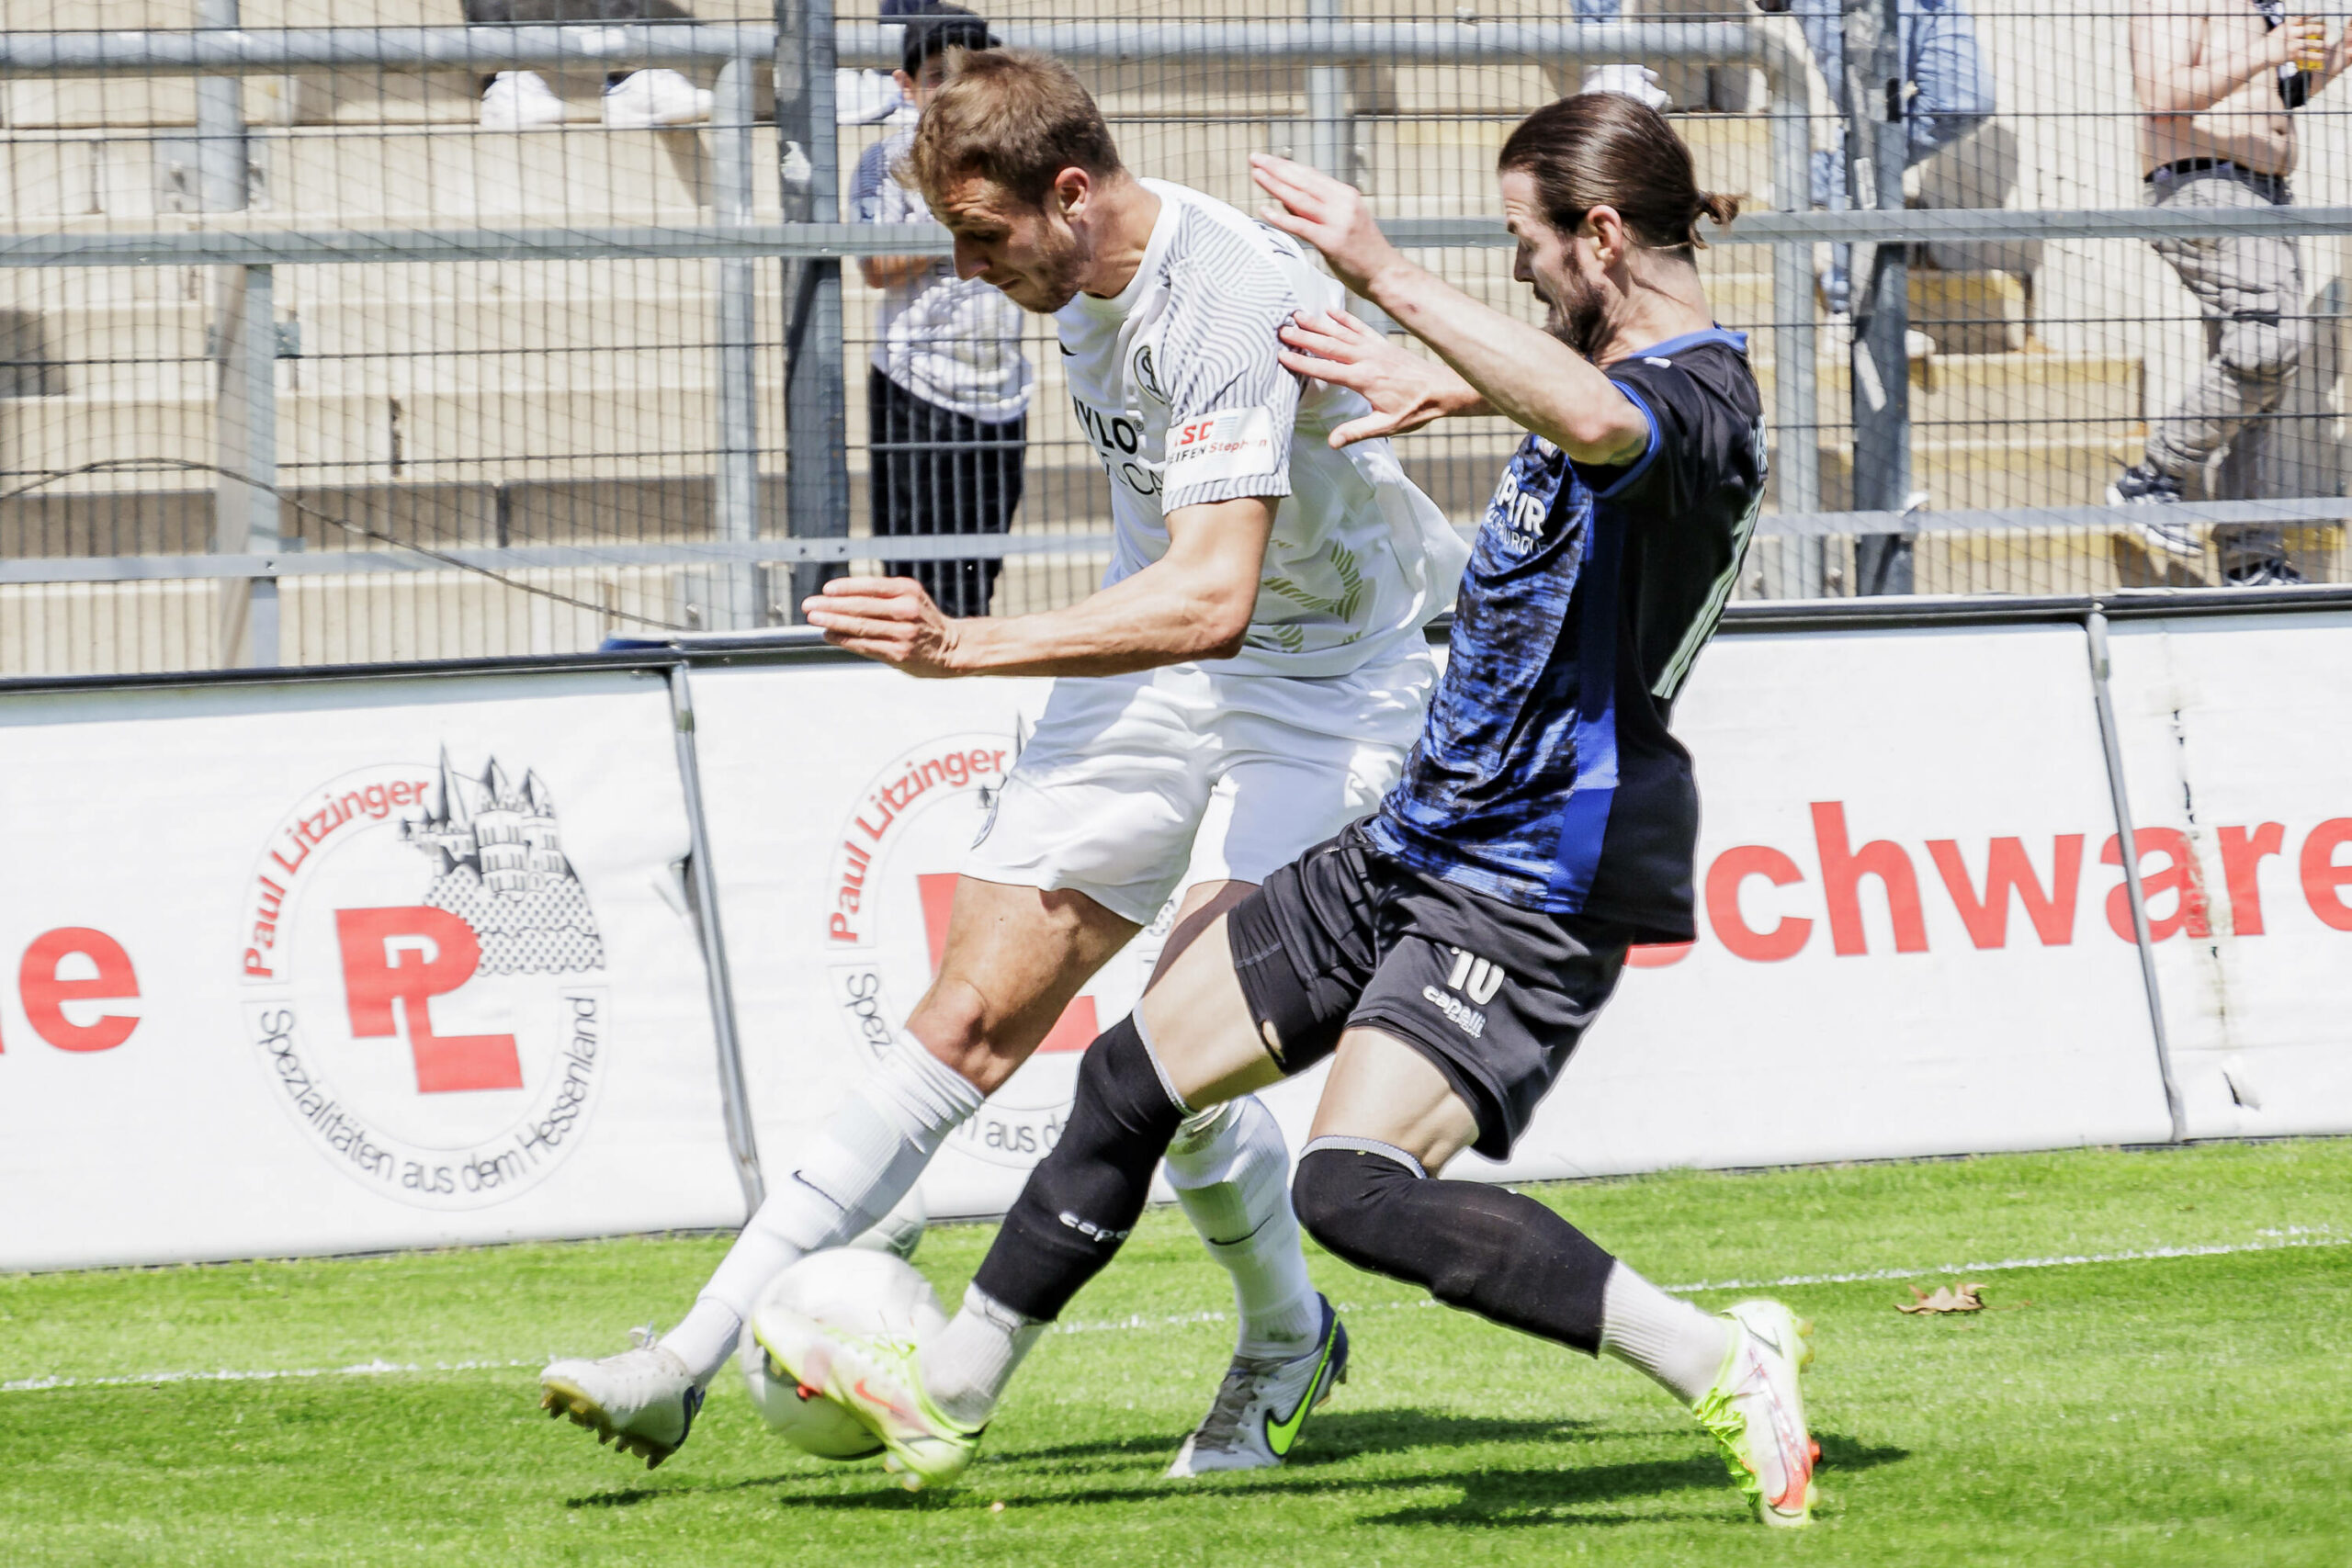 Zweikampf in der Regionallig-Partie des FSV Frankfurt gegen den SV Elversberg